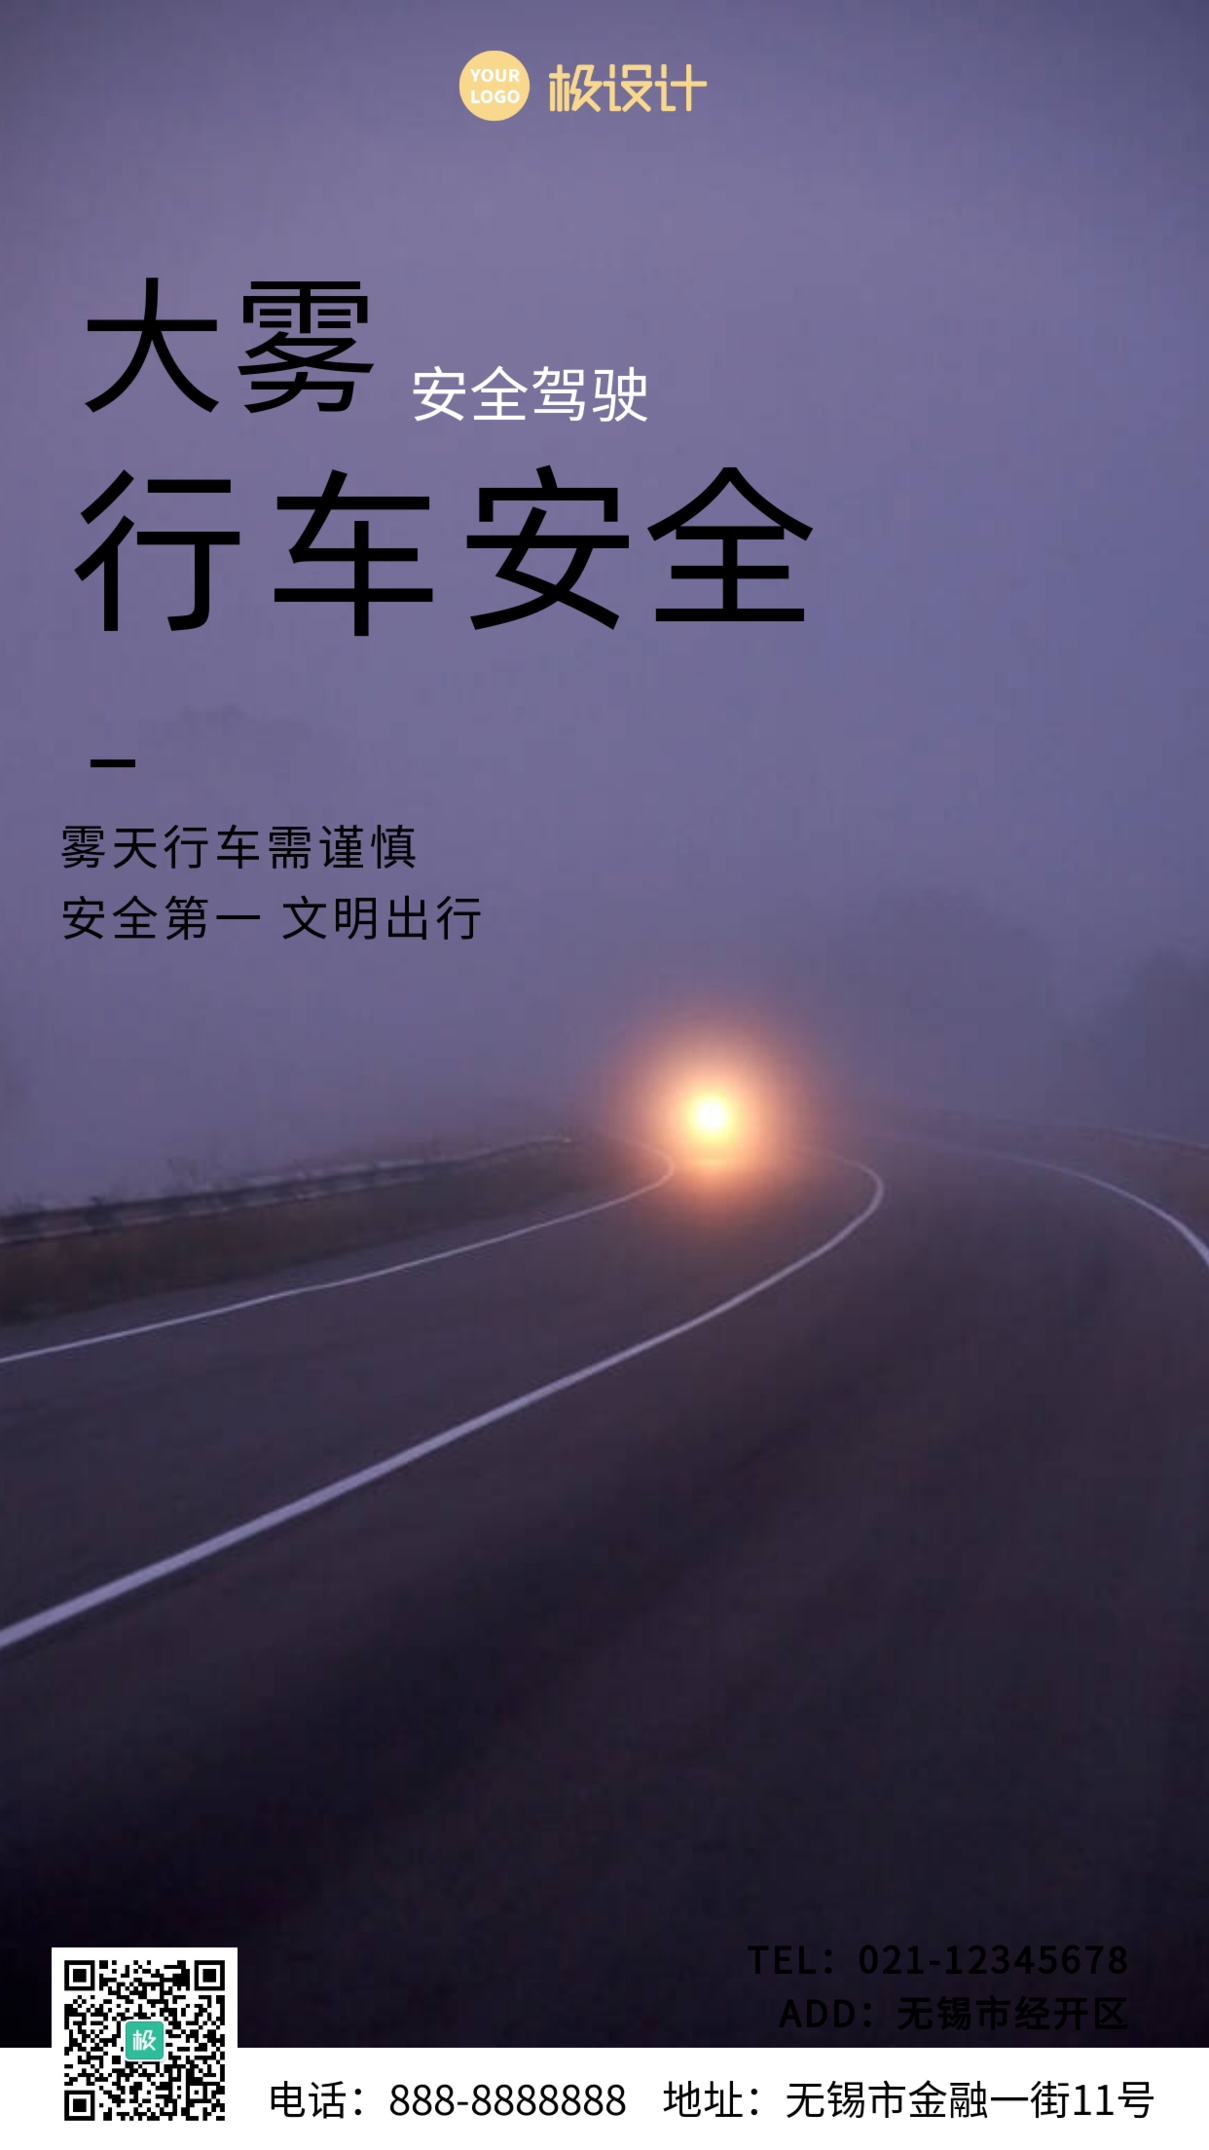 大雾行车安全封面黑色大气手机摄影海报